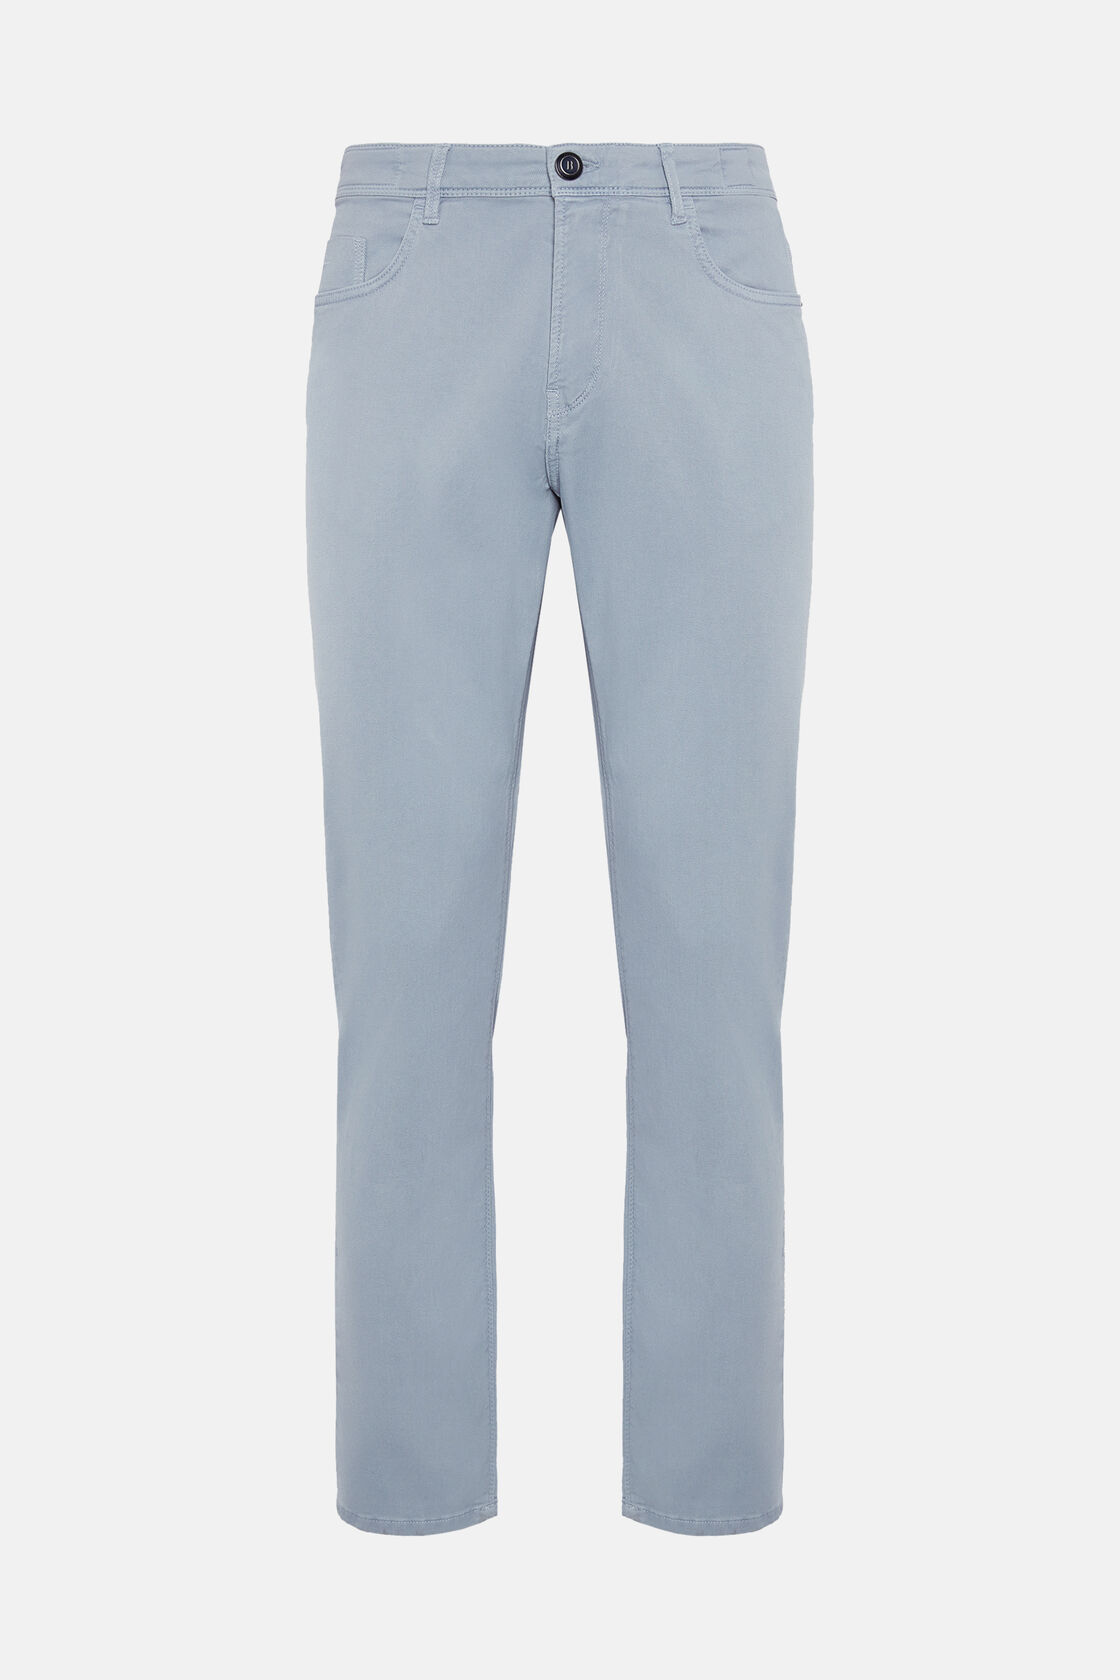 Jeans In Cotone Tencel Elasticizzato, Azzurro, hi-res